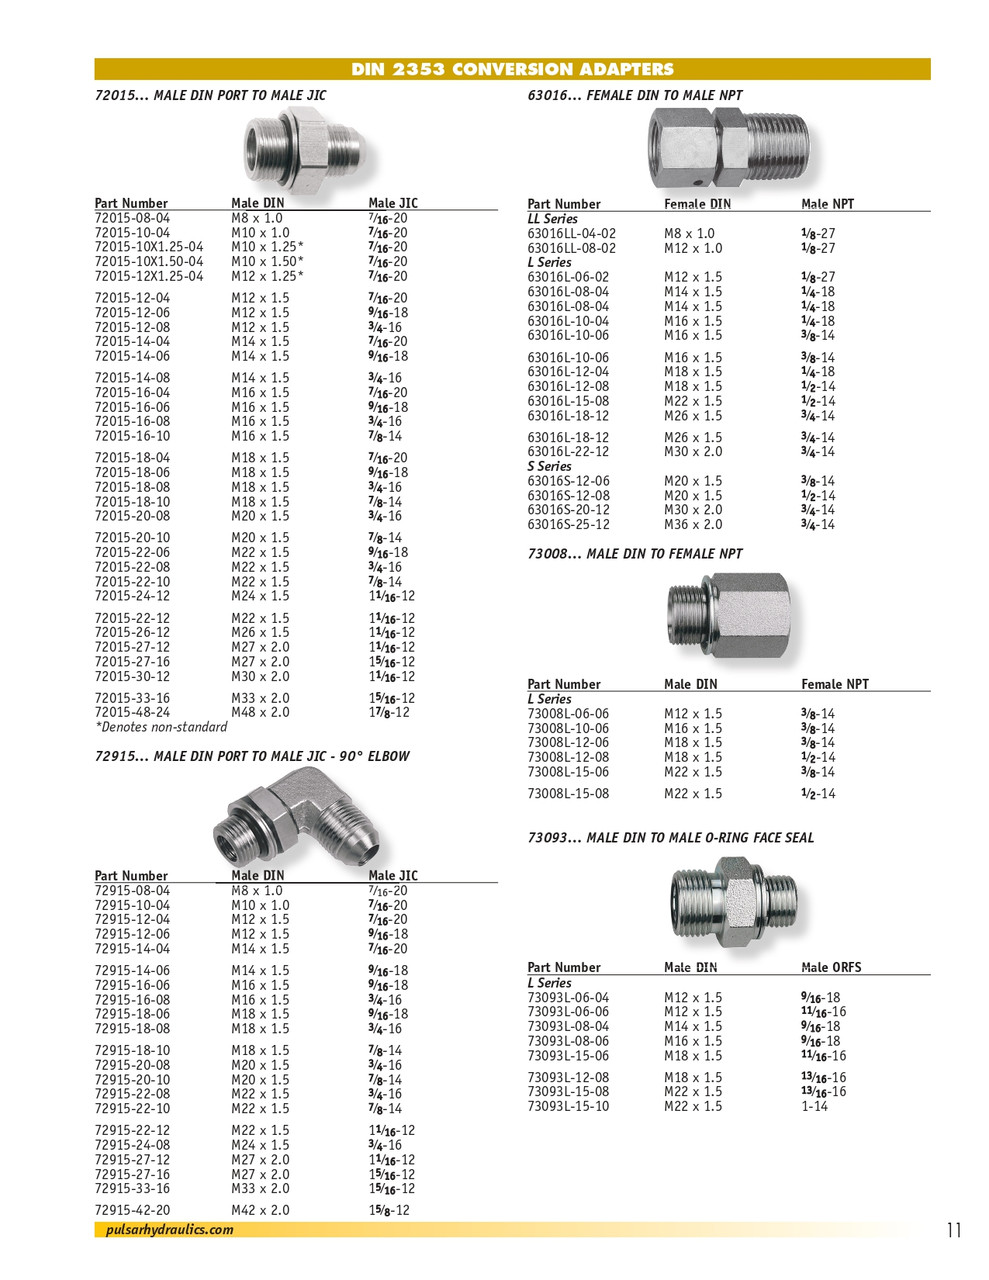 M27-2.0 x 3/4" Steel Male Metric Port -Male JIC 90° Elbow   72915-27-12